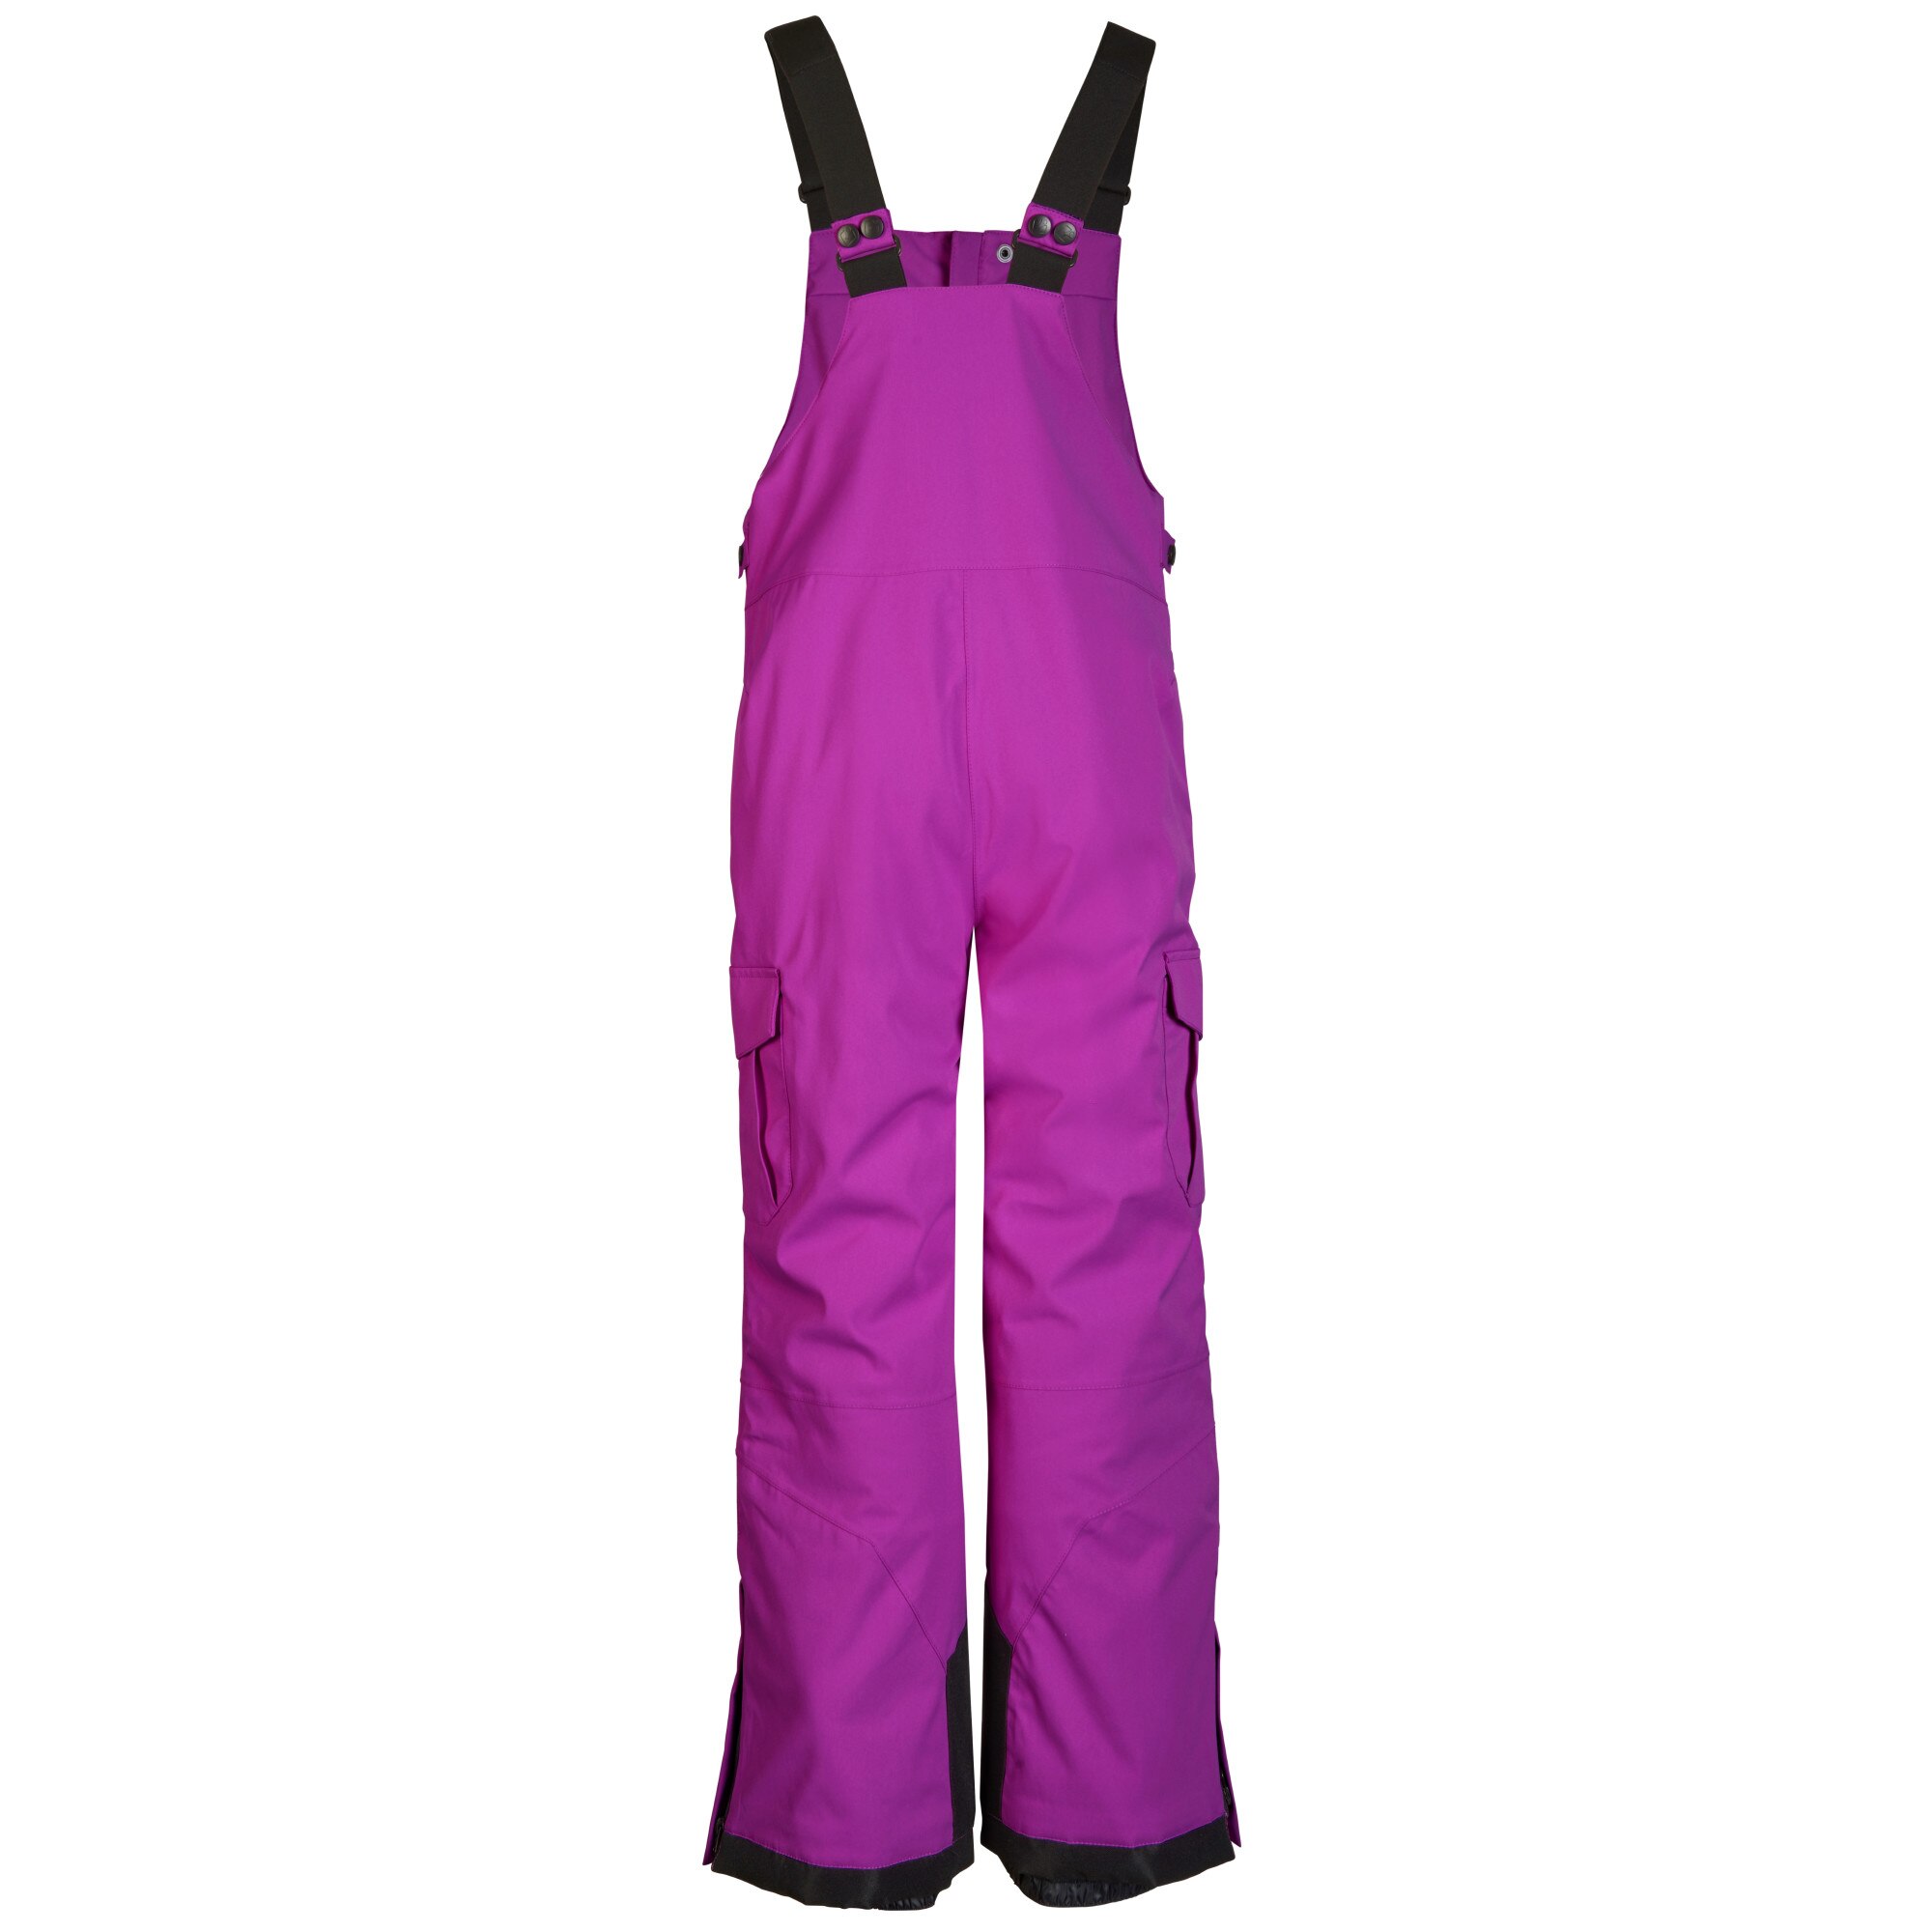 Pantaloni KSW 120 KDS Ski Pnts, Killtec, Neon Orchid, Marimea 176